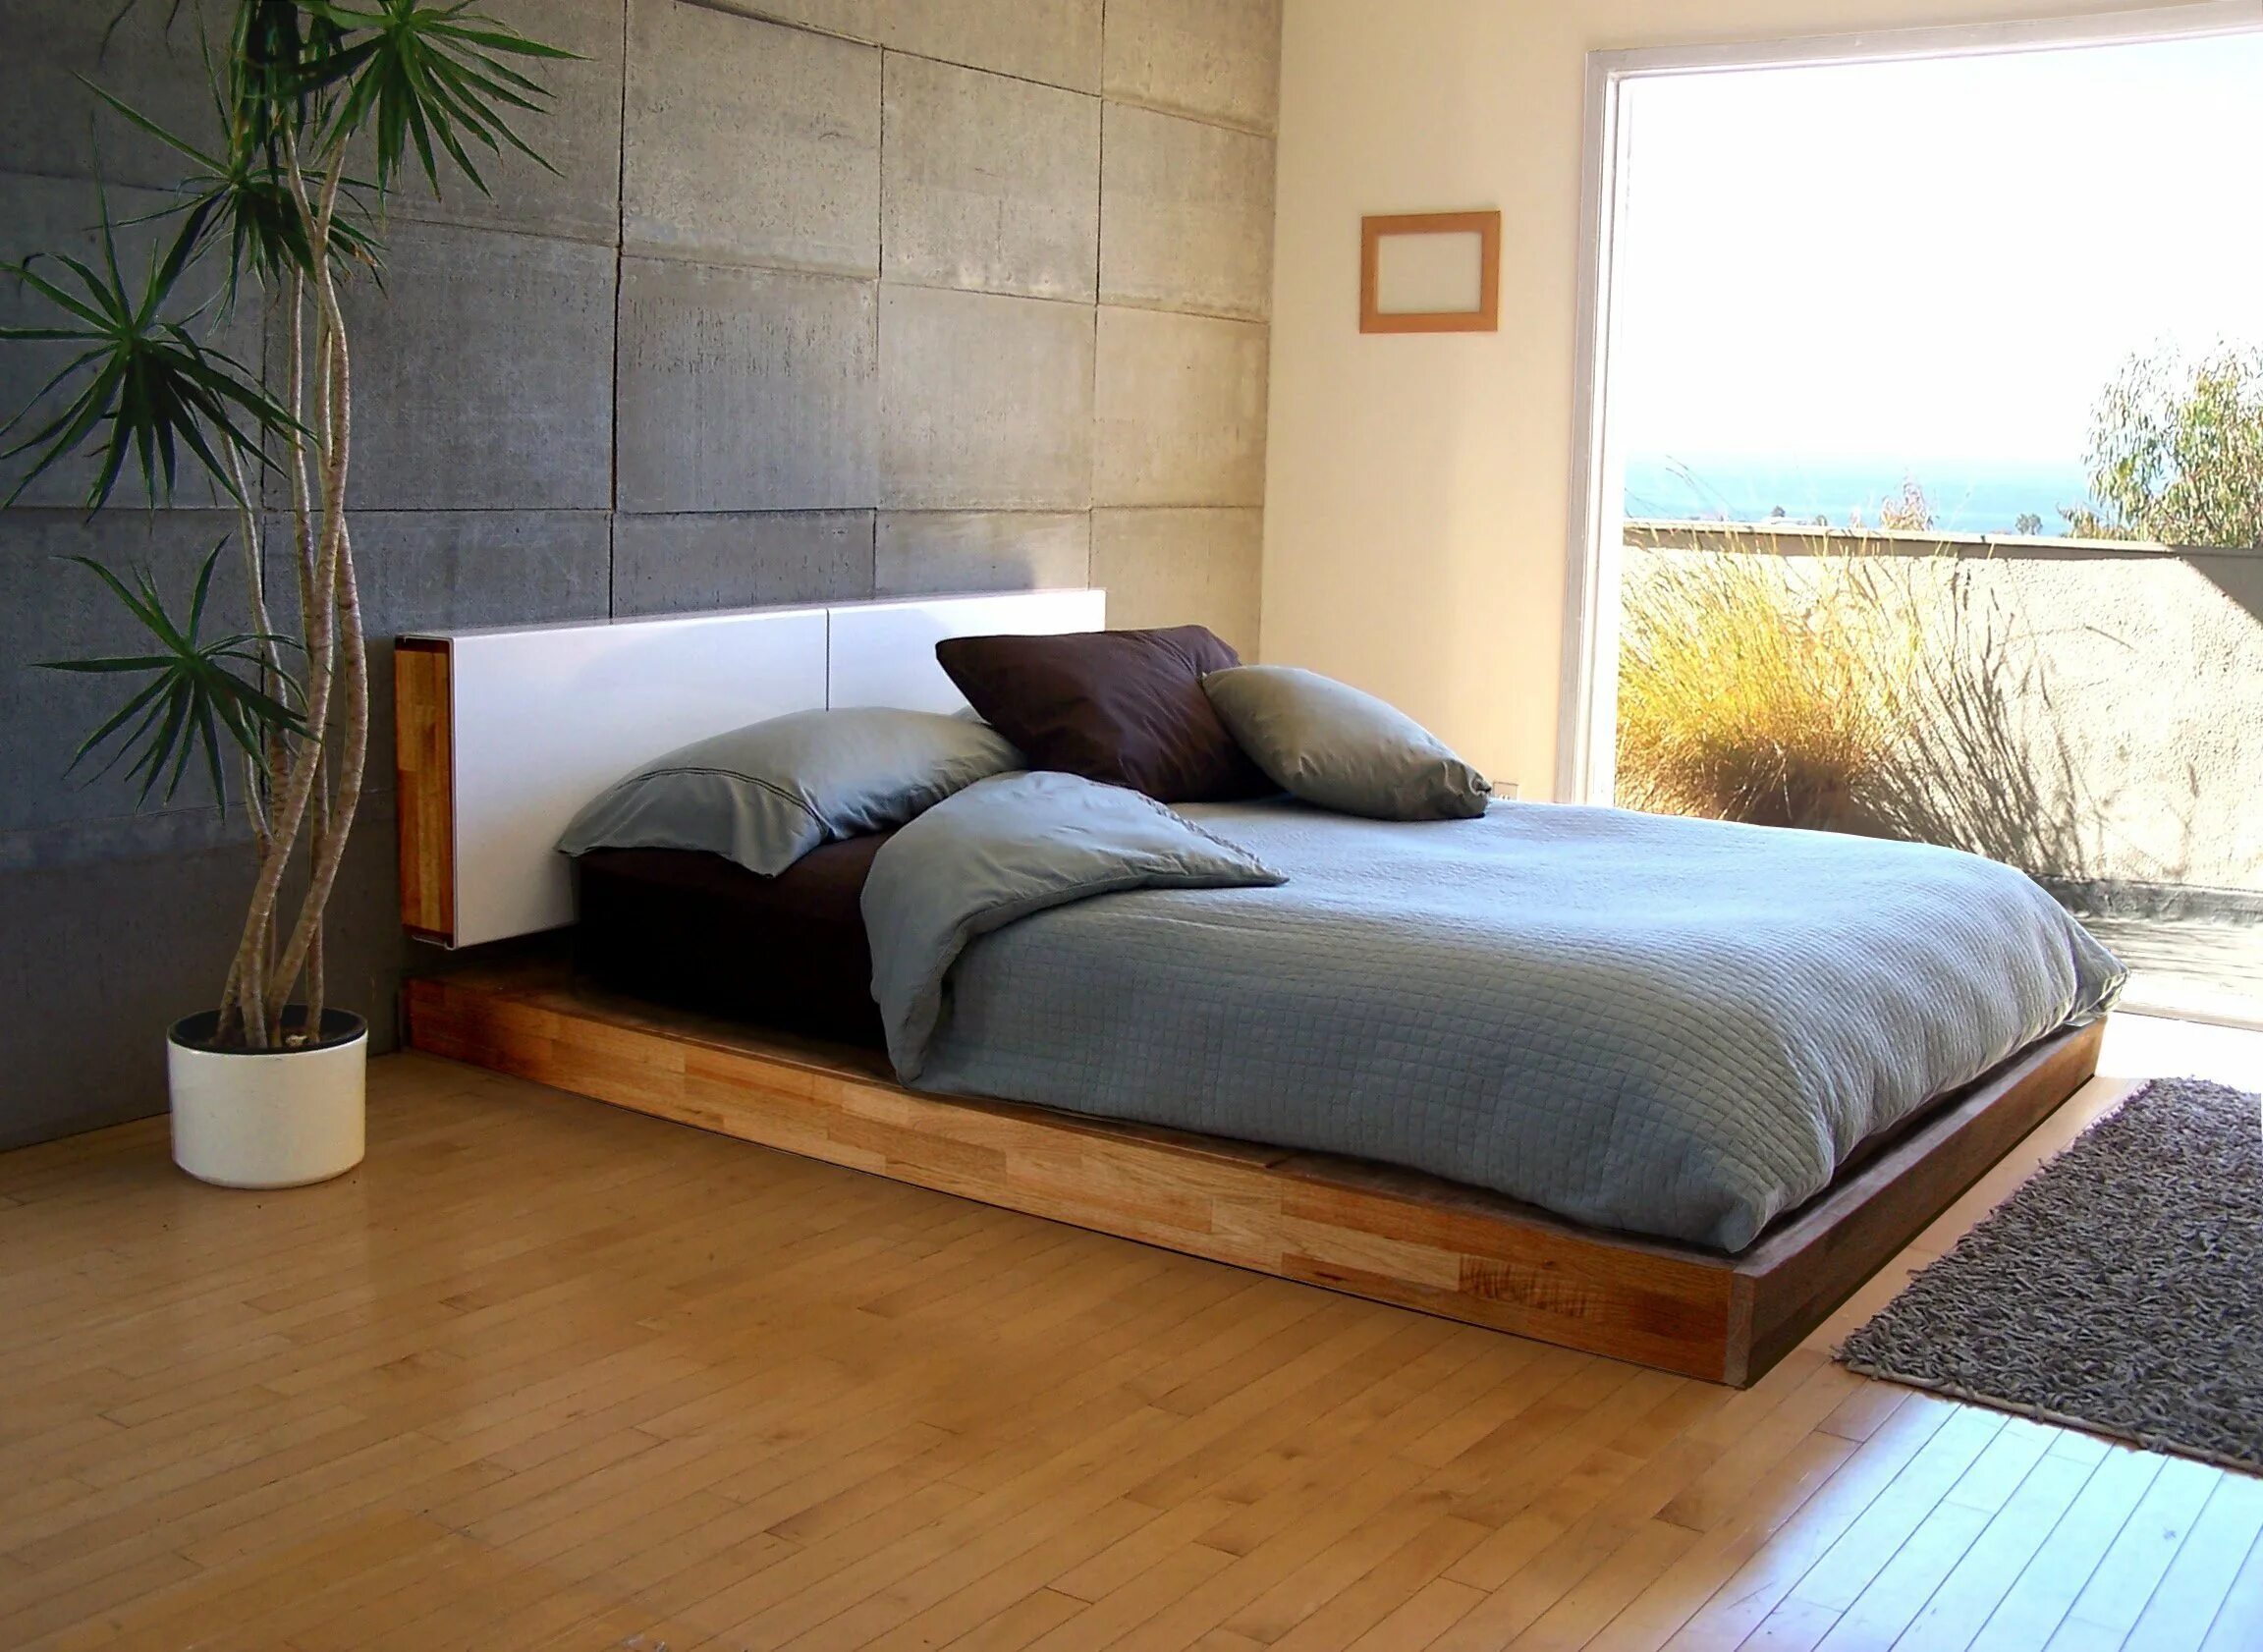 Кровать Кинг сайз Минимализм. Design Wood кровать Модерн. Кровать подиум. Кровать подиум с матрасом. Подиум для матраса